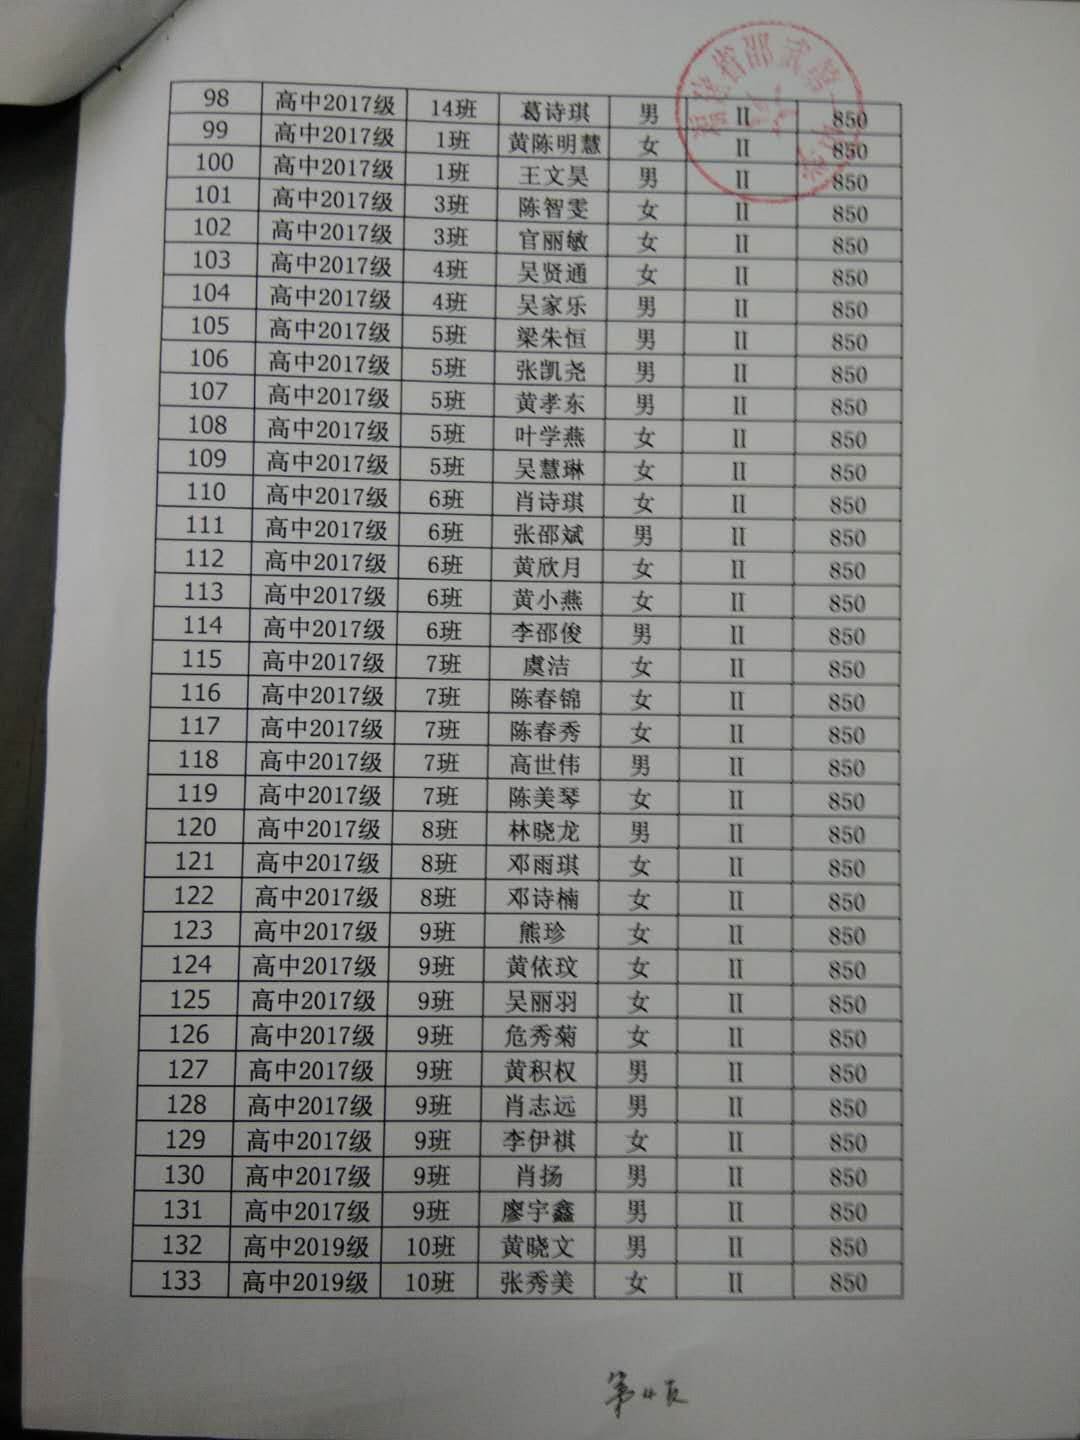 邵武一中2020春季学期国家助学金名单公示